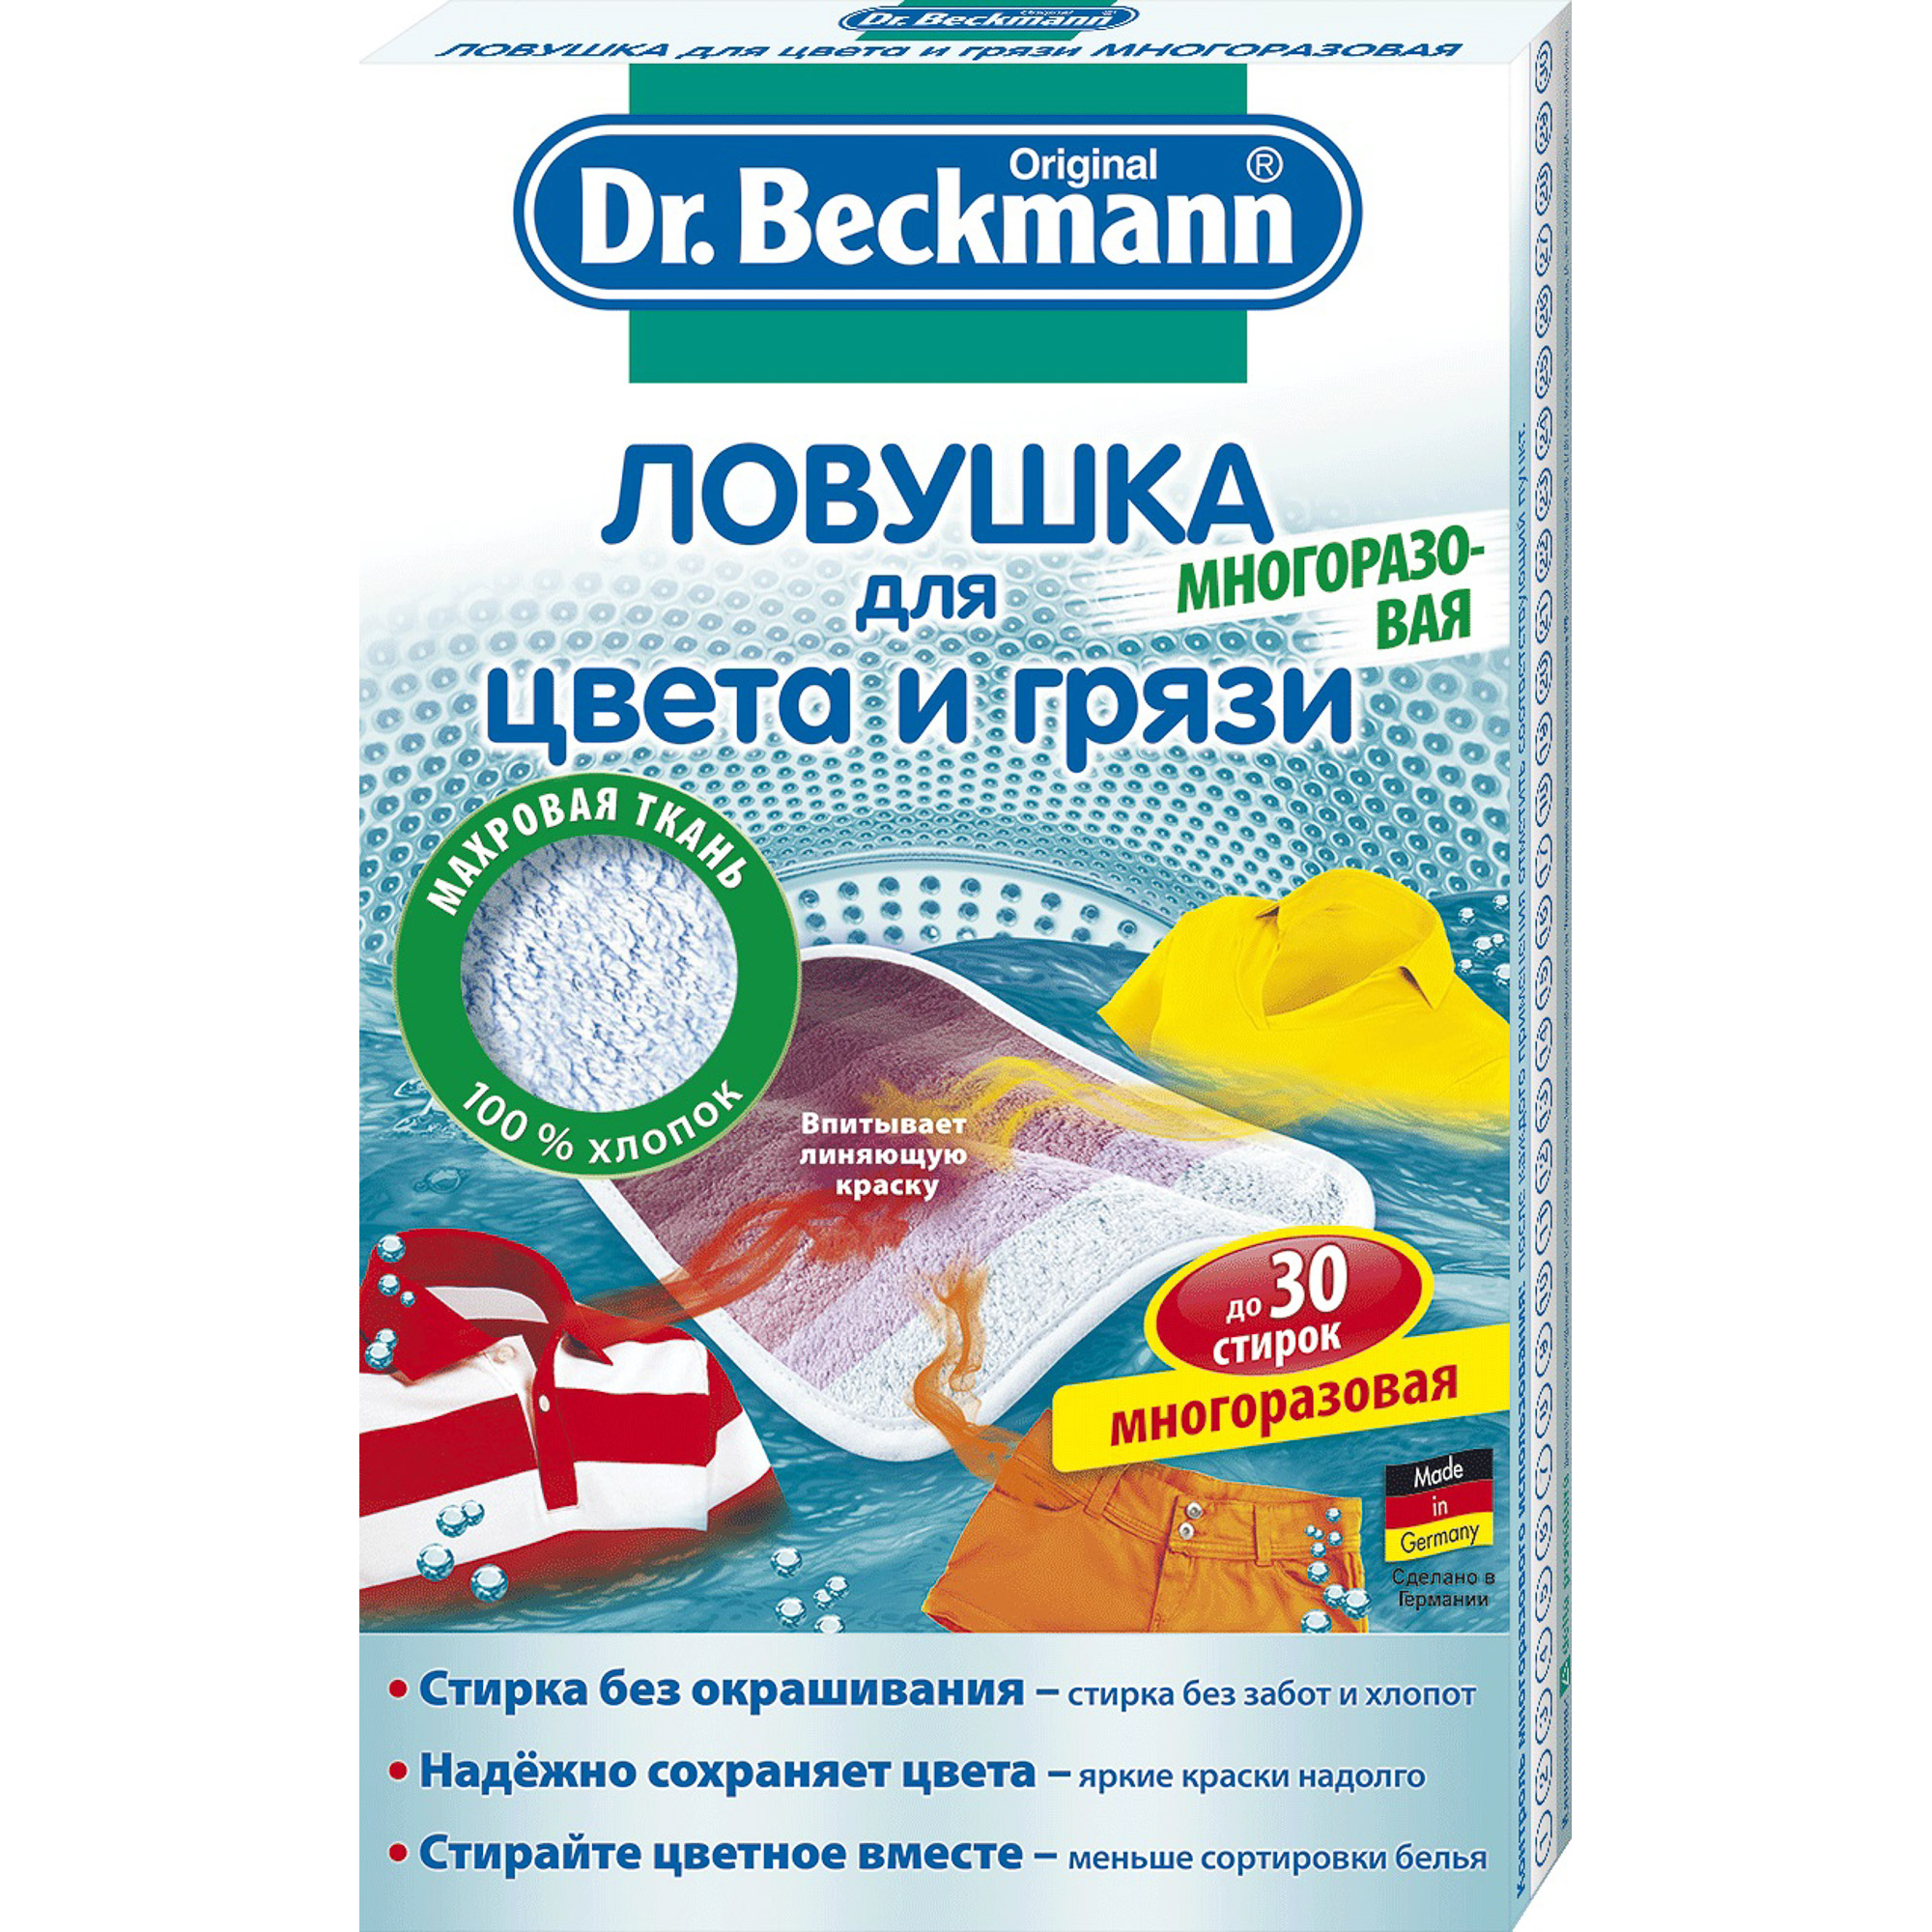 Ловушка для цвета и грязи Dr.Beckmann многоразовая клеевая ловушка домик для отлова одежной моли bros